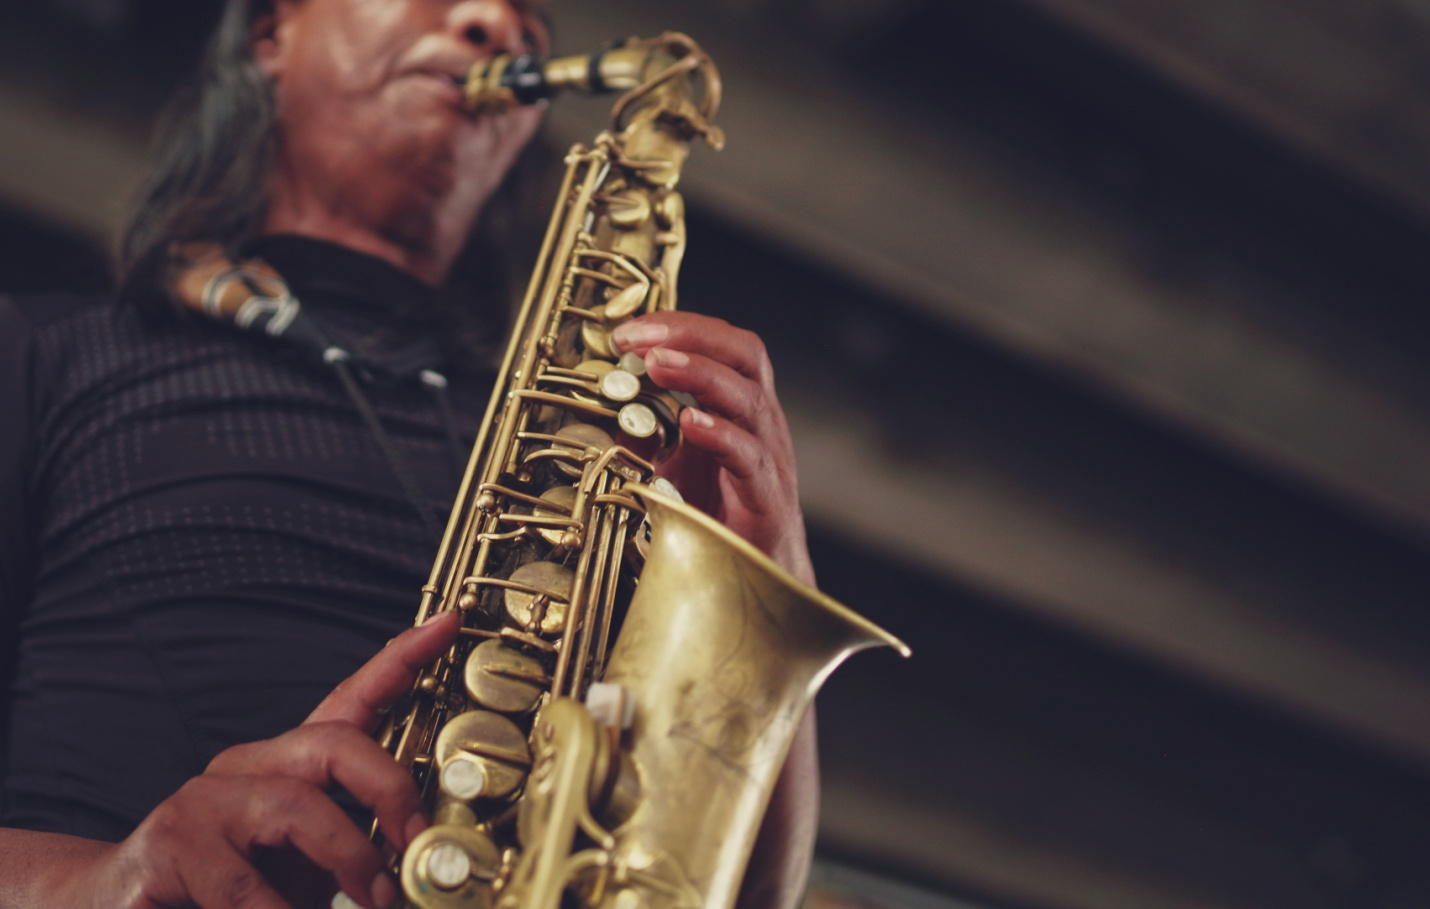 A man playing a golden saxophone